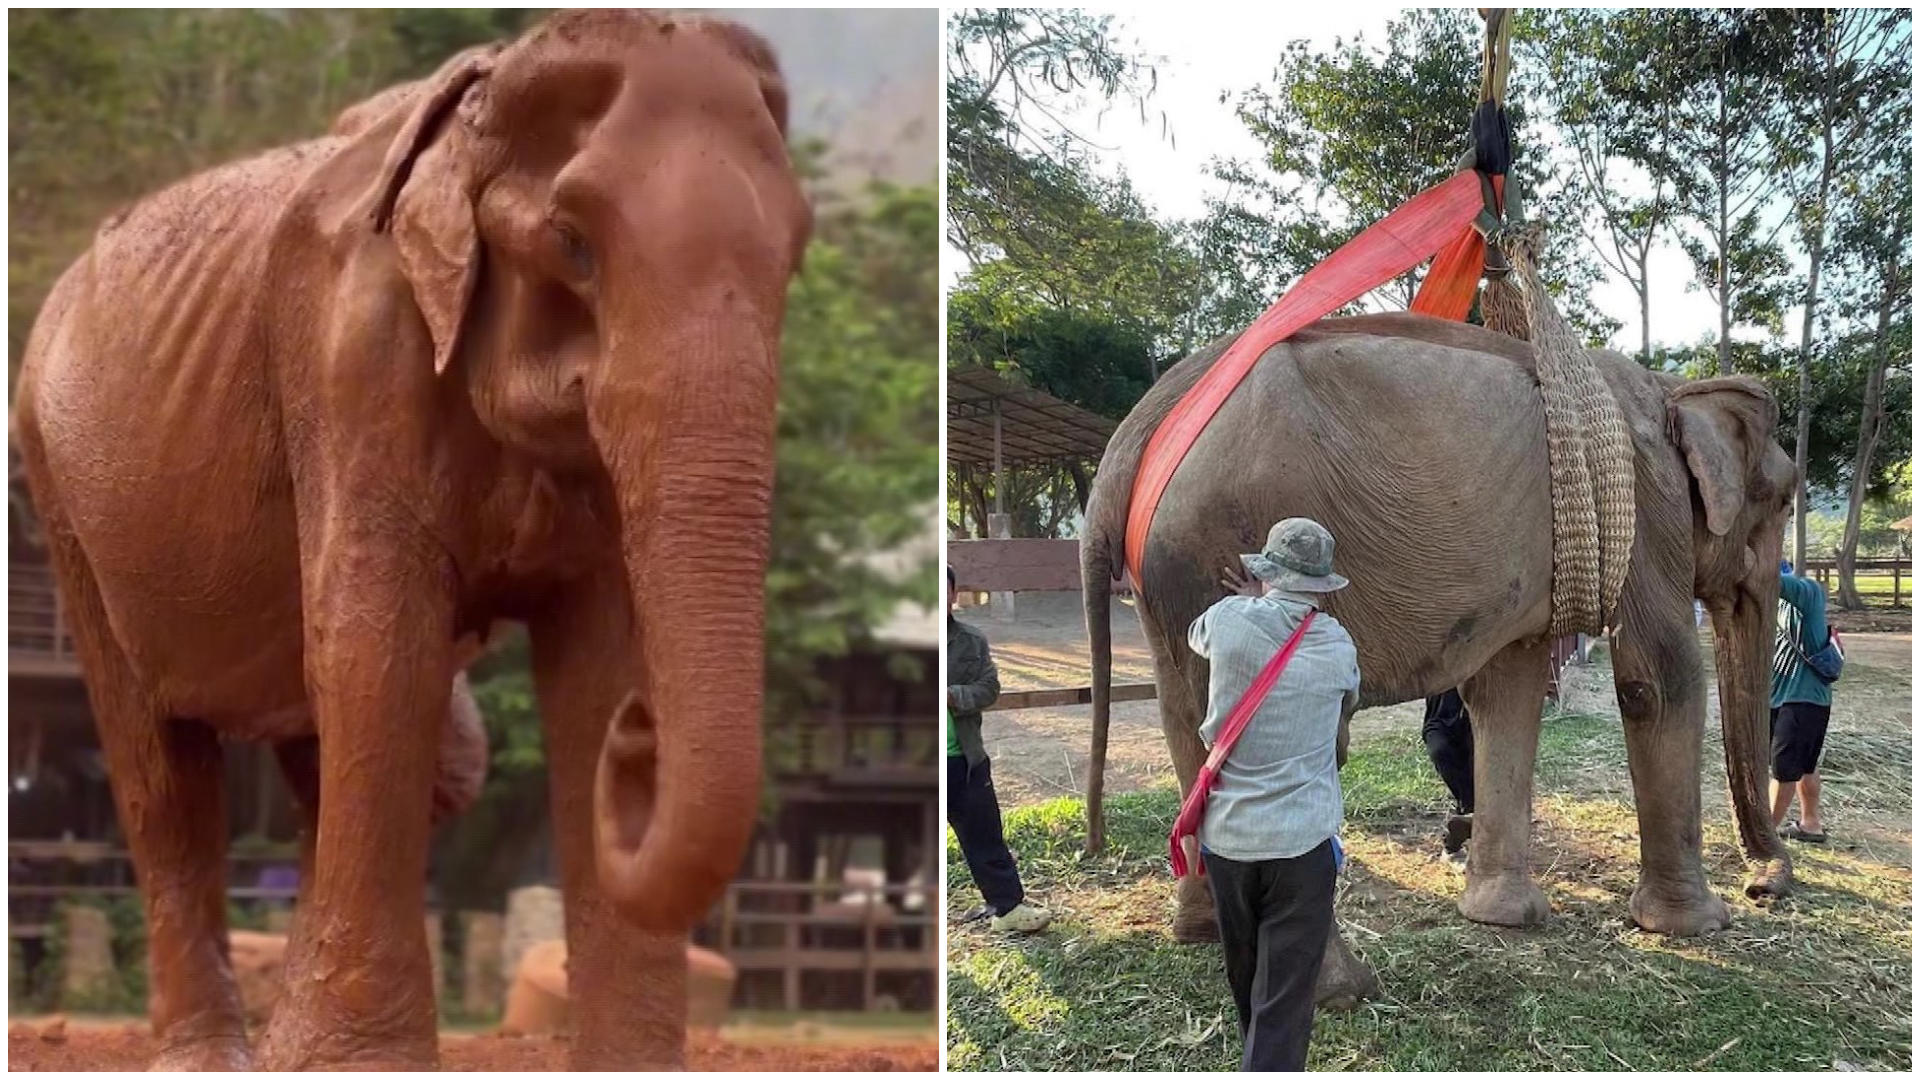 La femmina di elefante è stata finalmente liberata dopo 80 anni di prigionia!  Lieto fine per Sombun